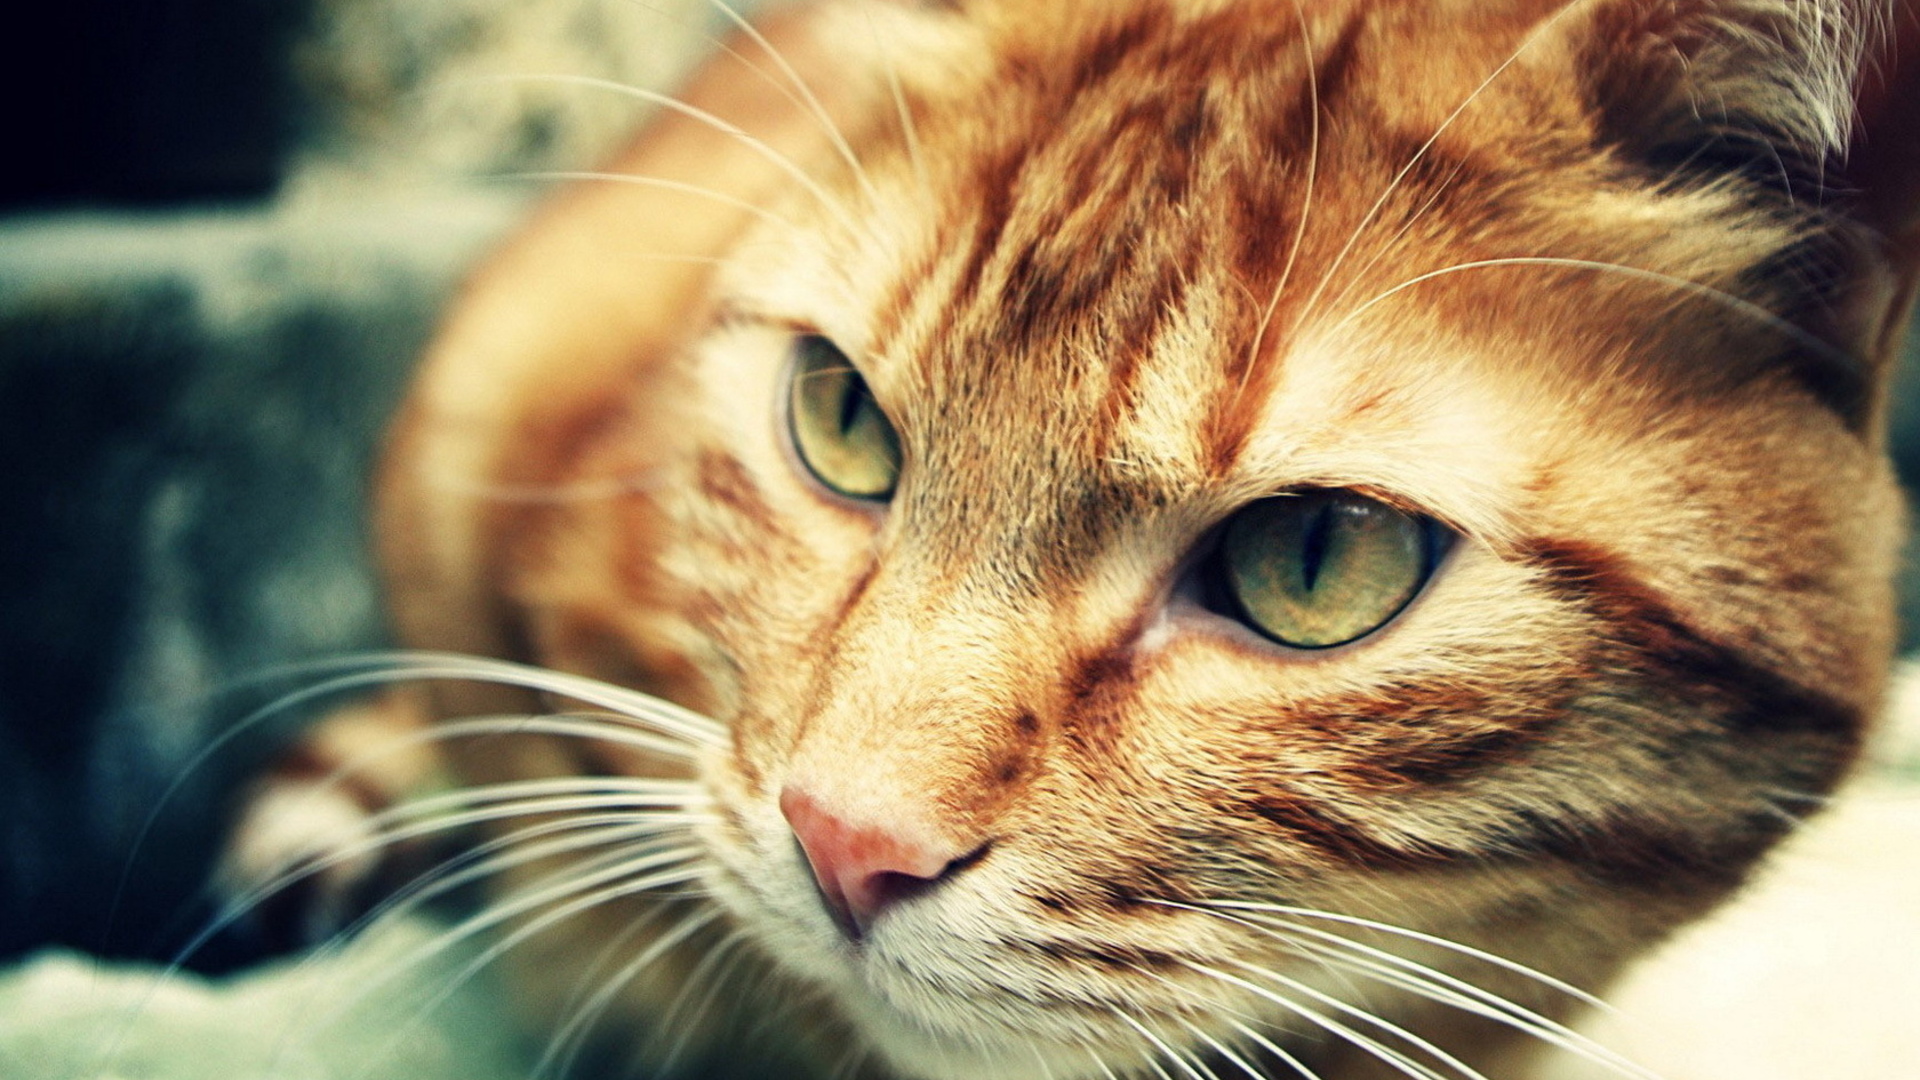 Descarga gratuita de fondo de pantalla para móvil de Cara, Ojo, Gato, Gatos, Animales.